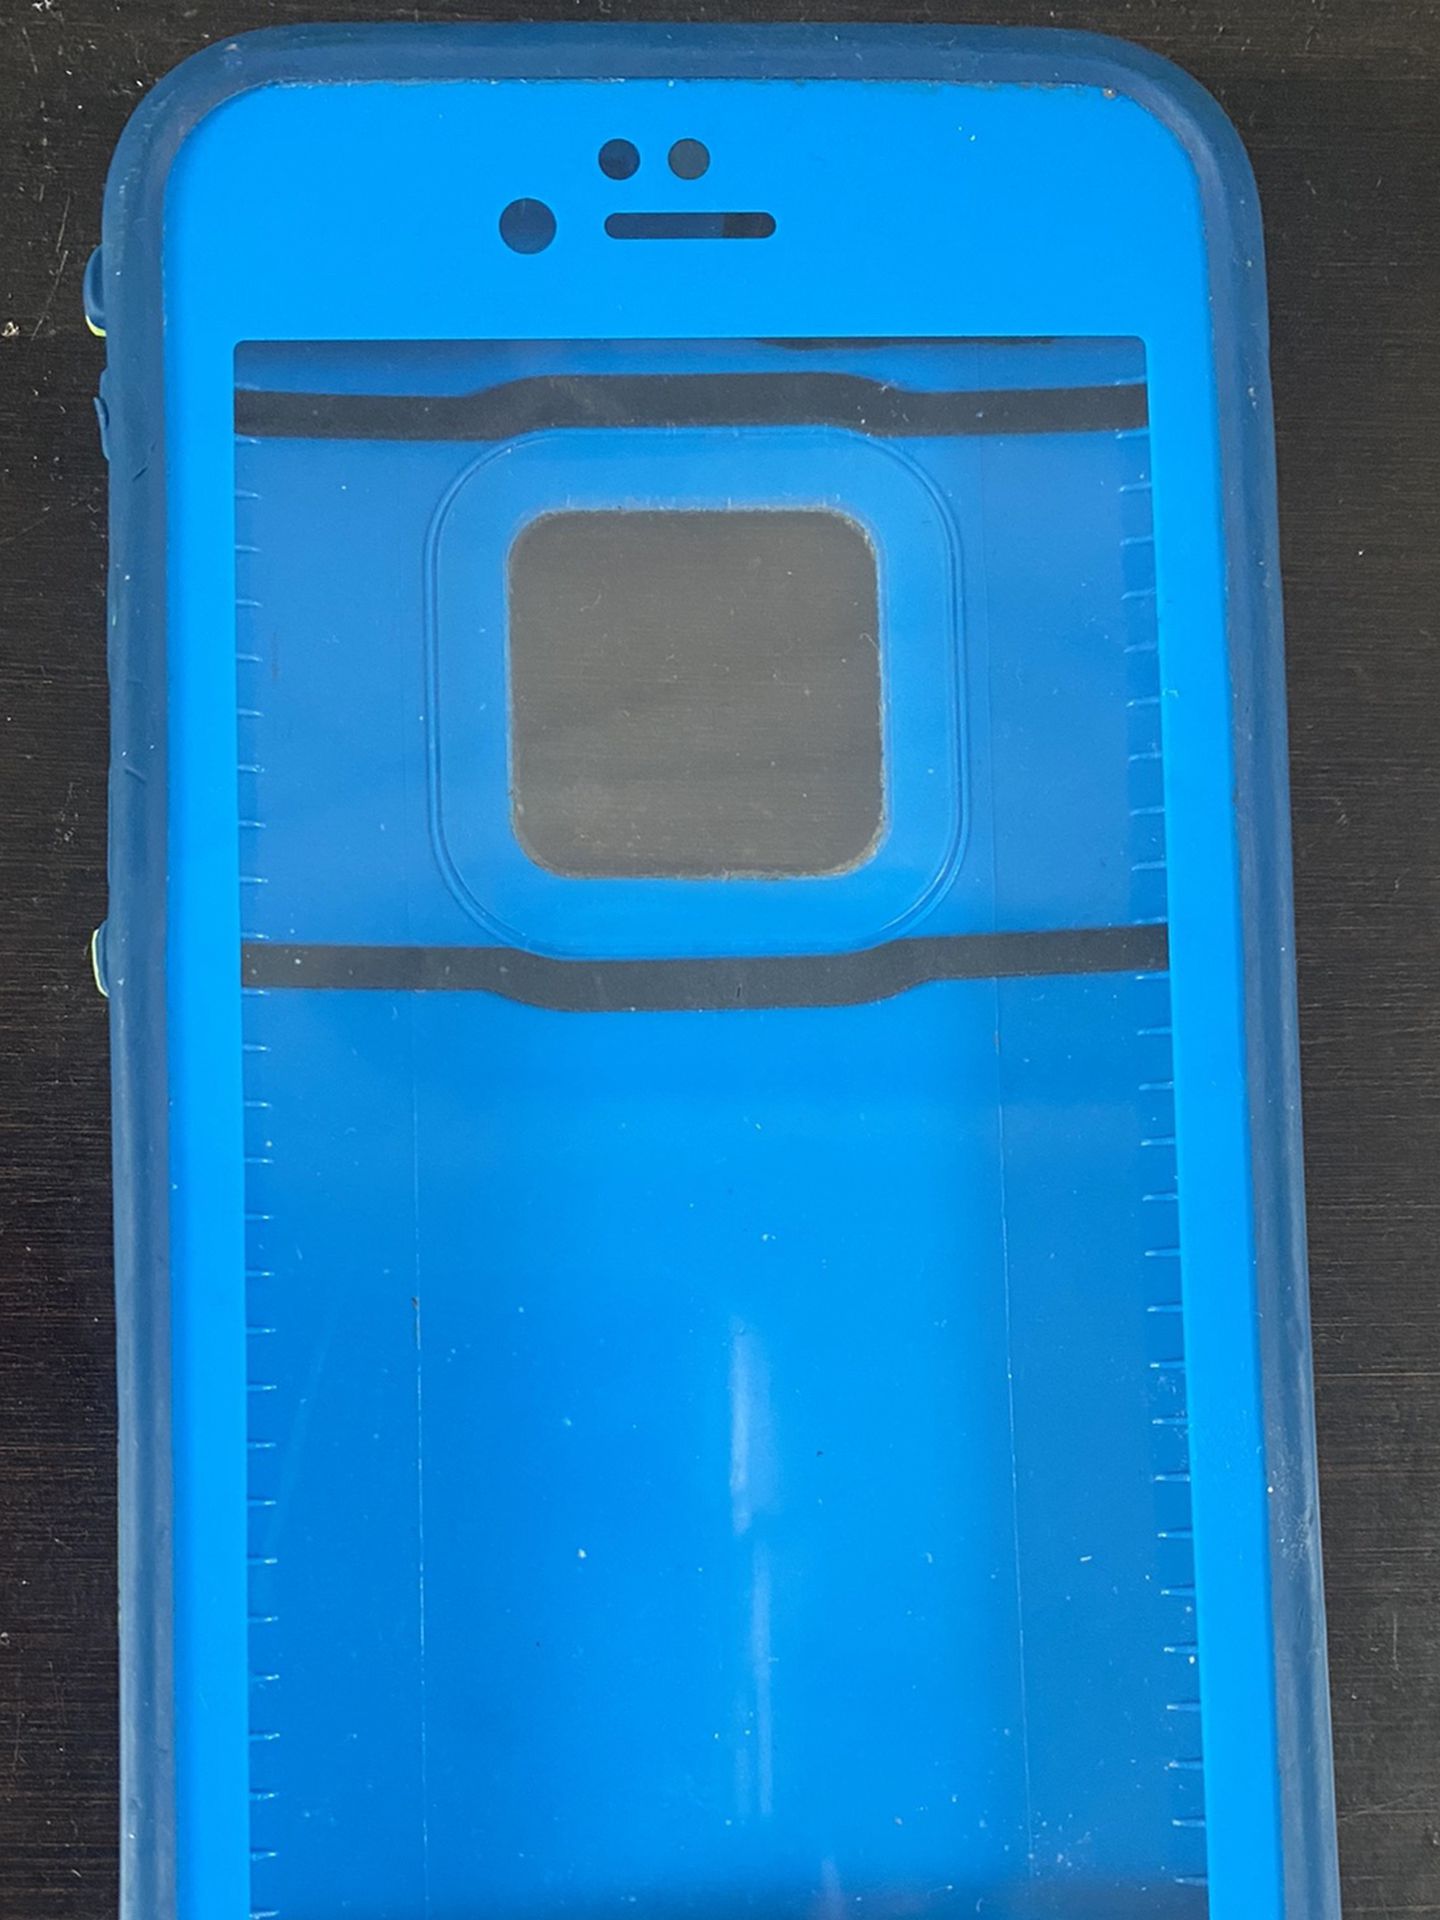 iPhone 6/6S Lifeproof Phone Case